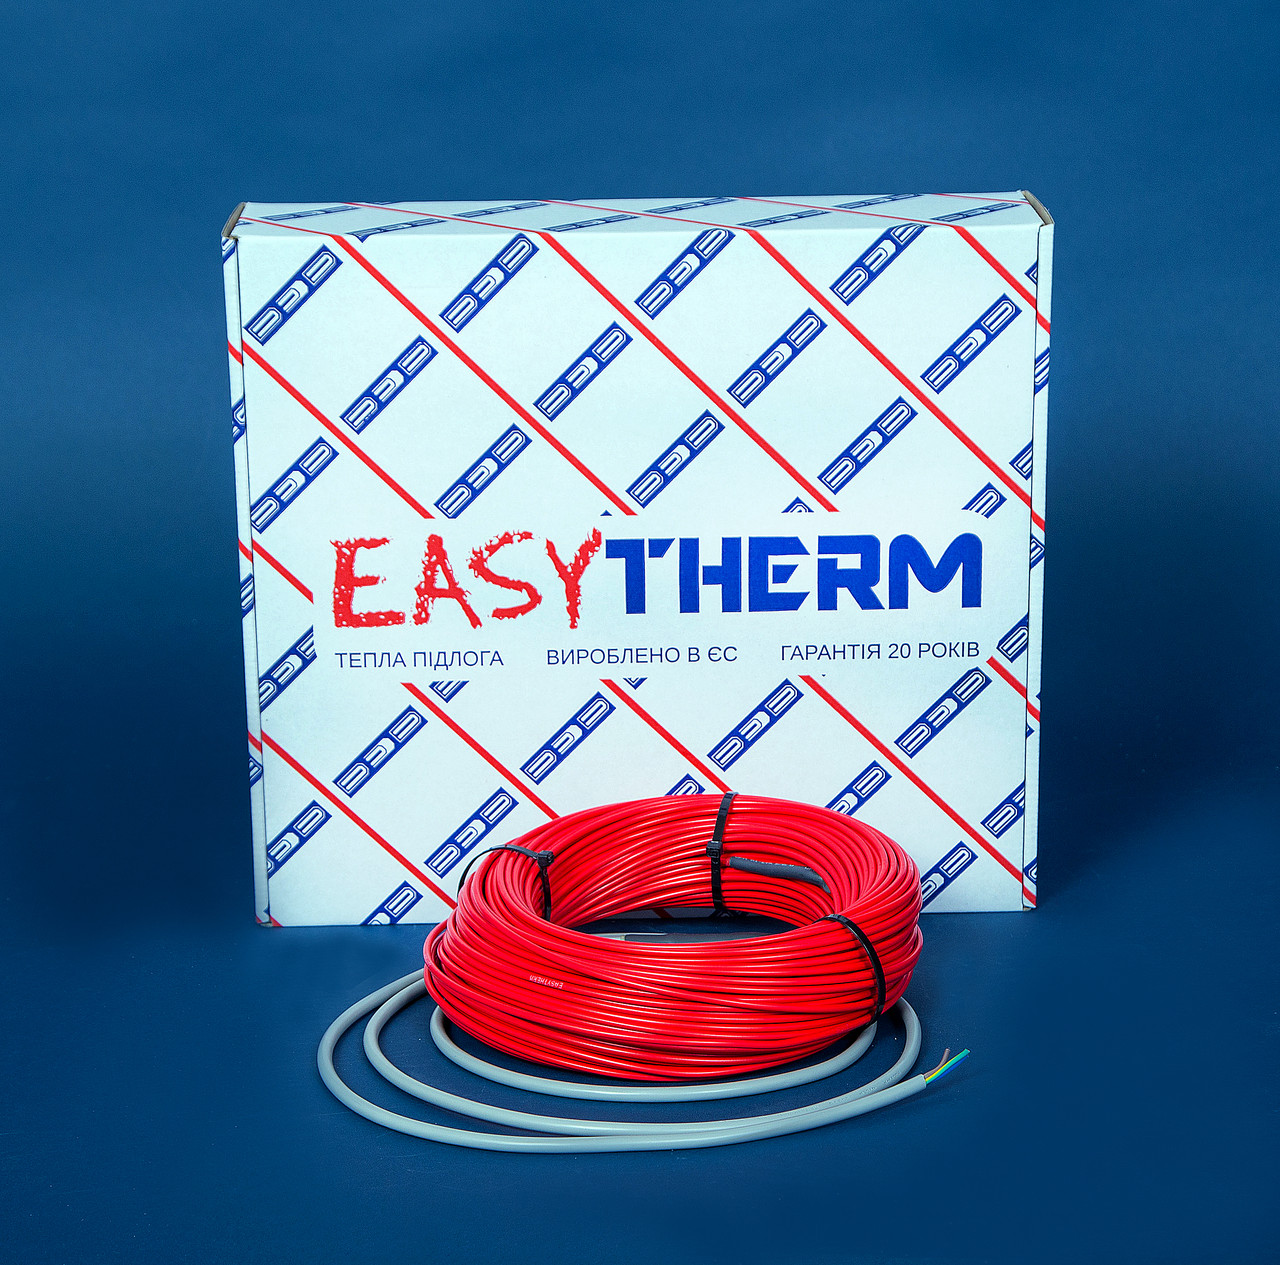 Электрический теплый пол EasyTherm Easycable 42.0 отзывы - изображения 5